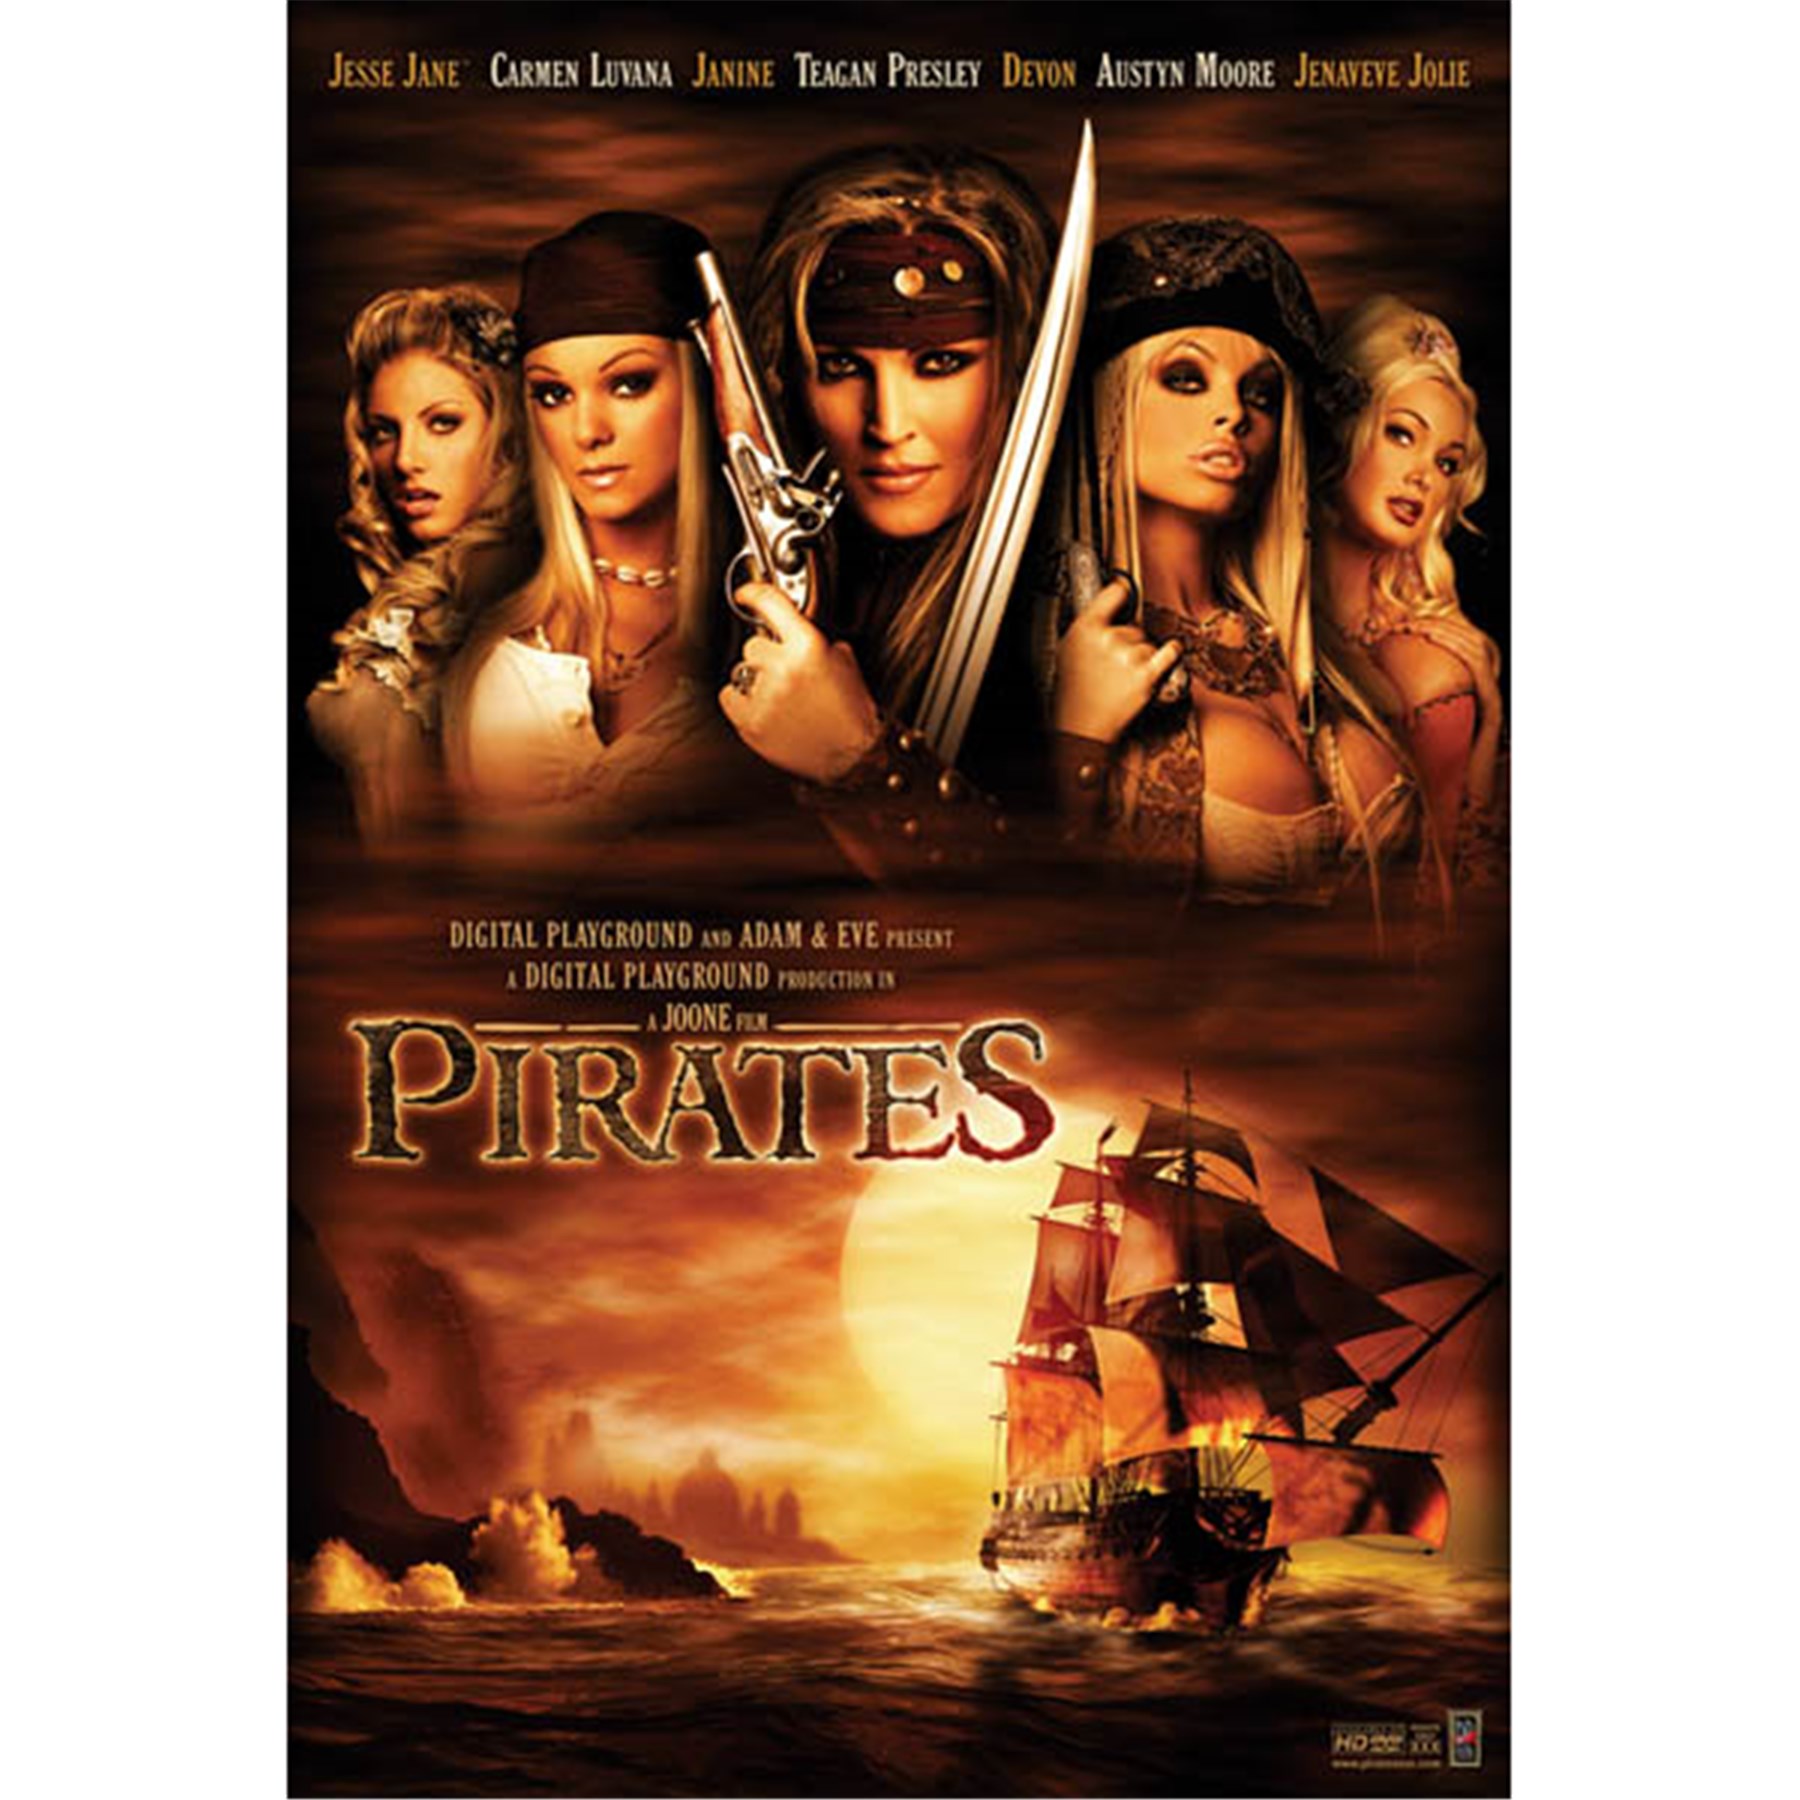 Pirates Xxx Full Movies - Pirates